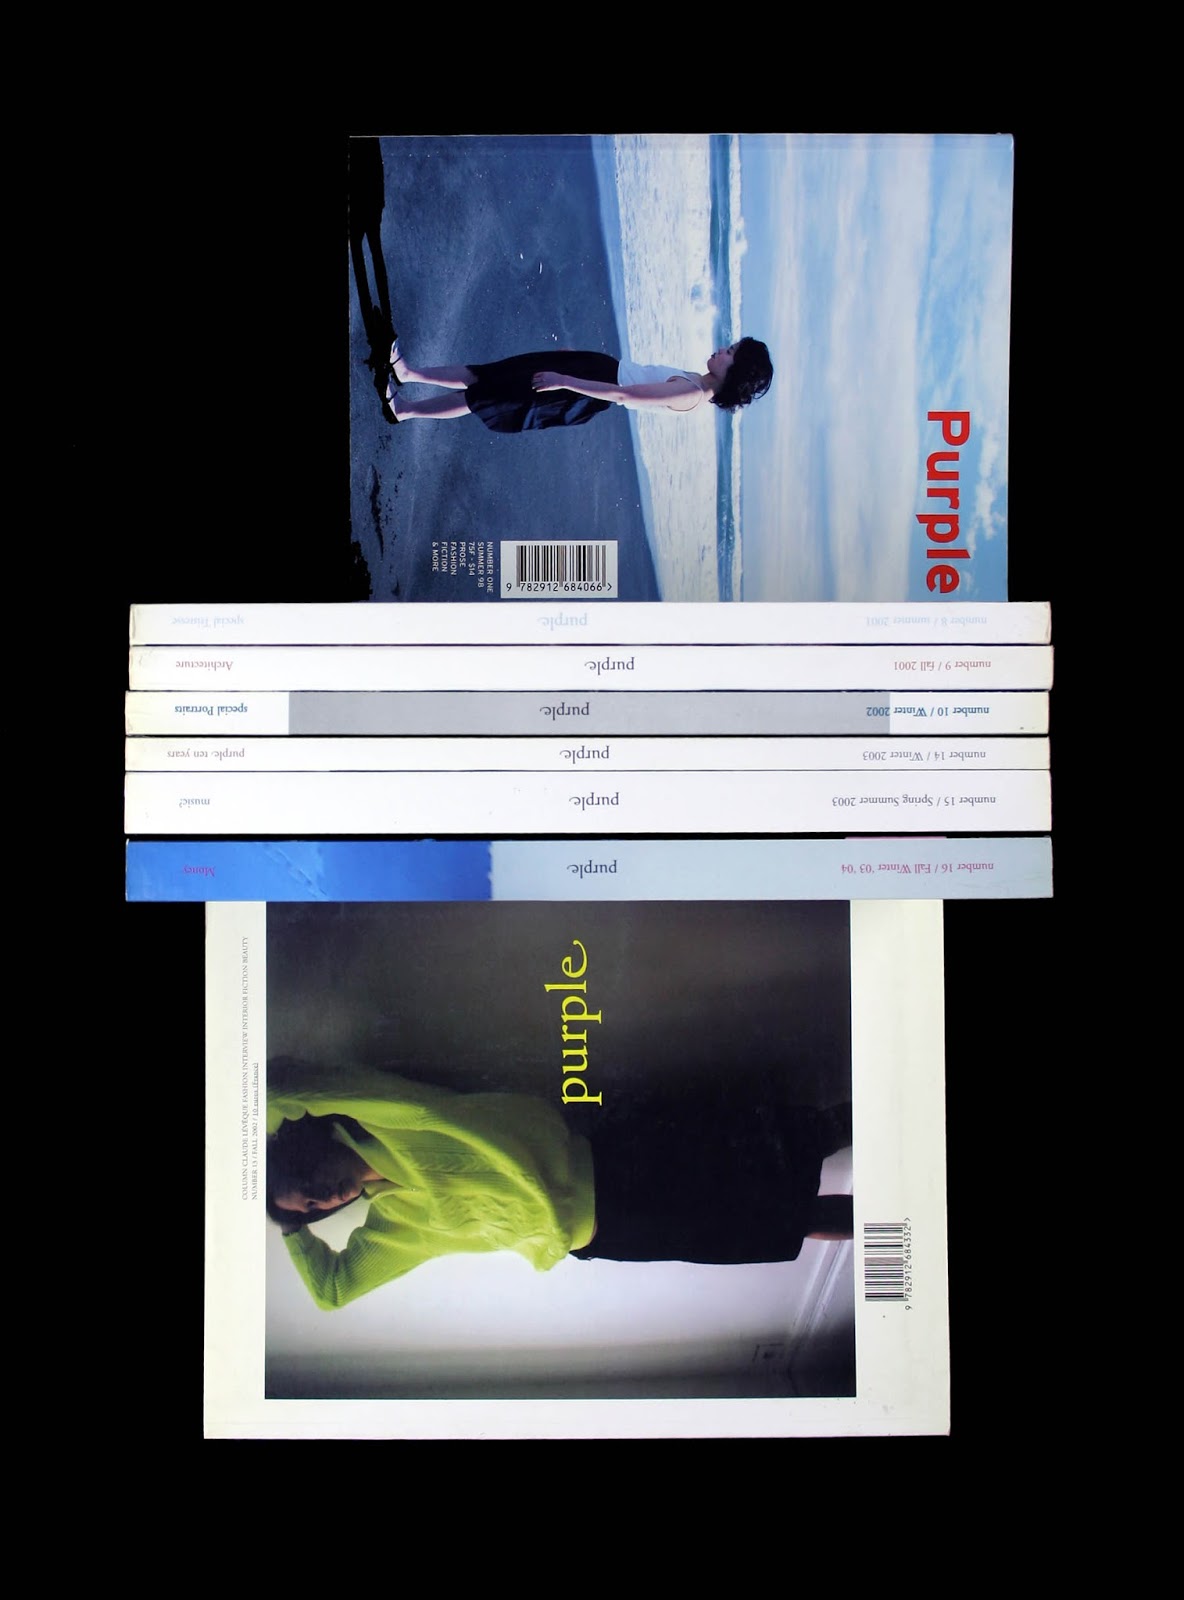 november-books: Elein Fleiss, Olivier Zahm / Purple 1-16 (complete